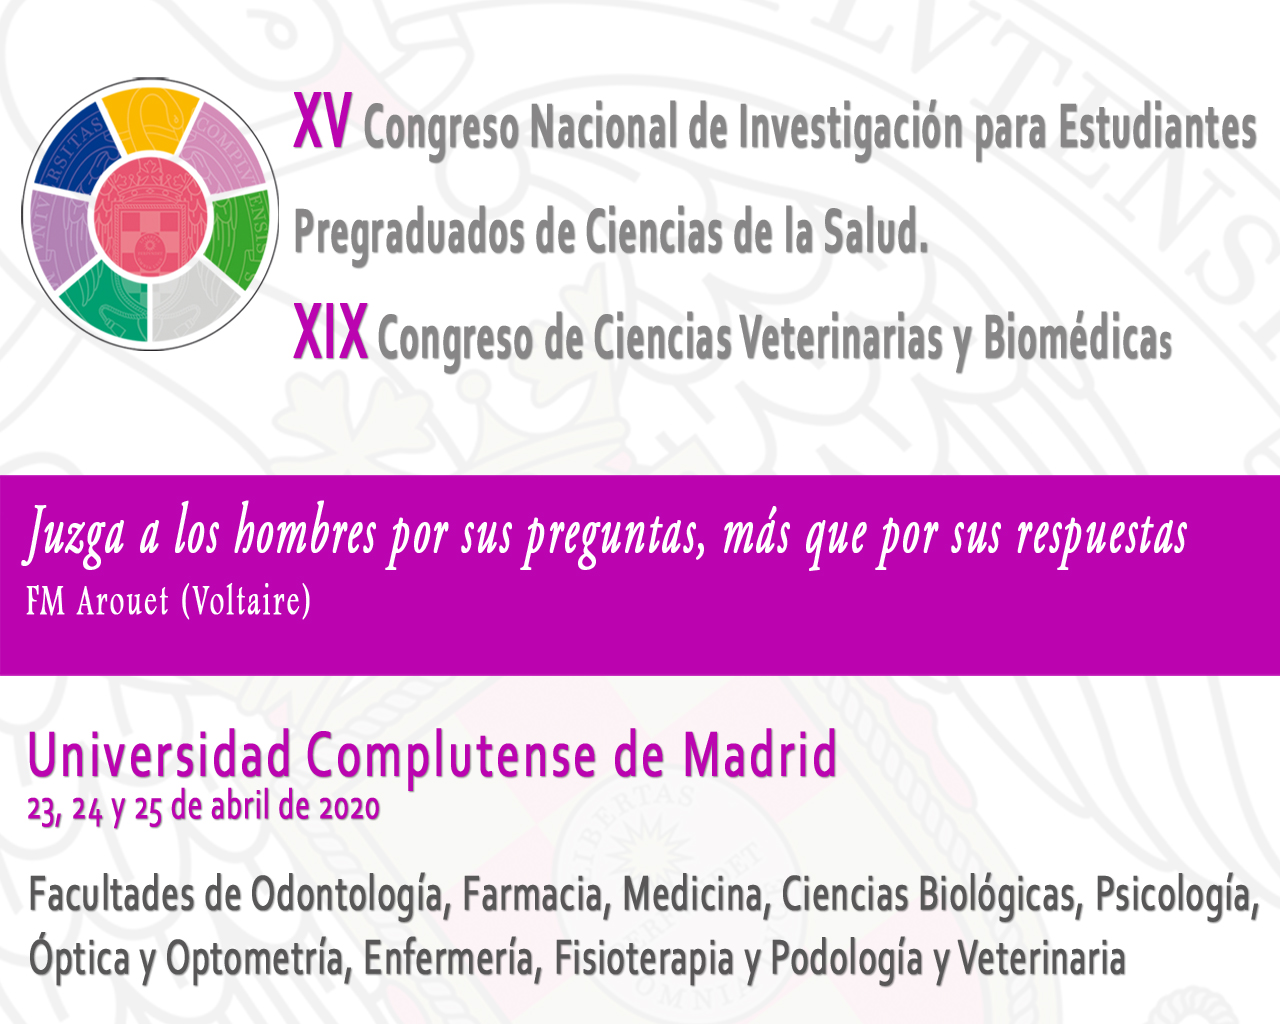 XV Congreso Nacional de Investigación para Estudiantes Pregraduados de Ciencias de la Salud. XIX Congreso de Ciencias Veterinarias y Biomédicas